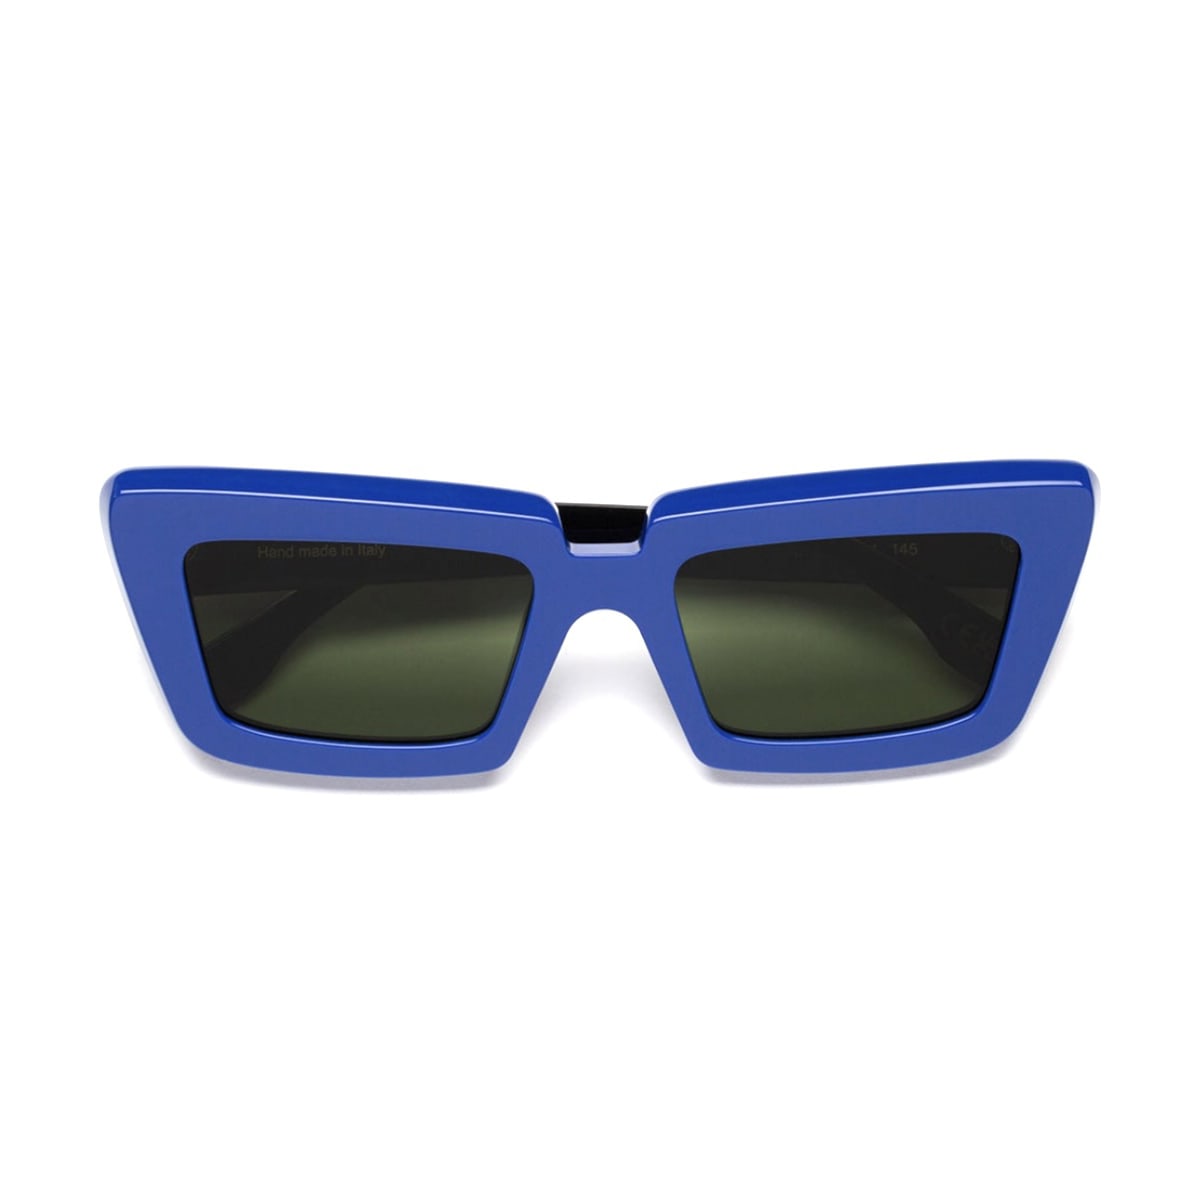 Coccodrillo Triphase Blue Sunglasses